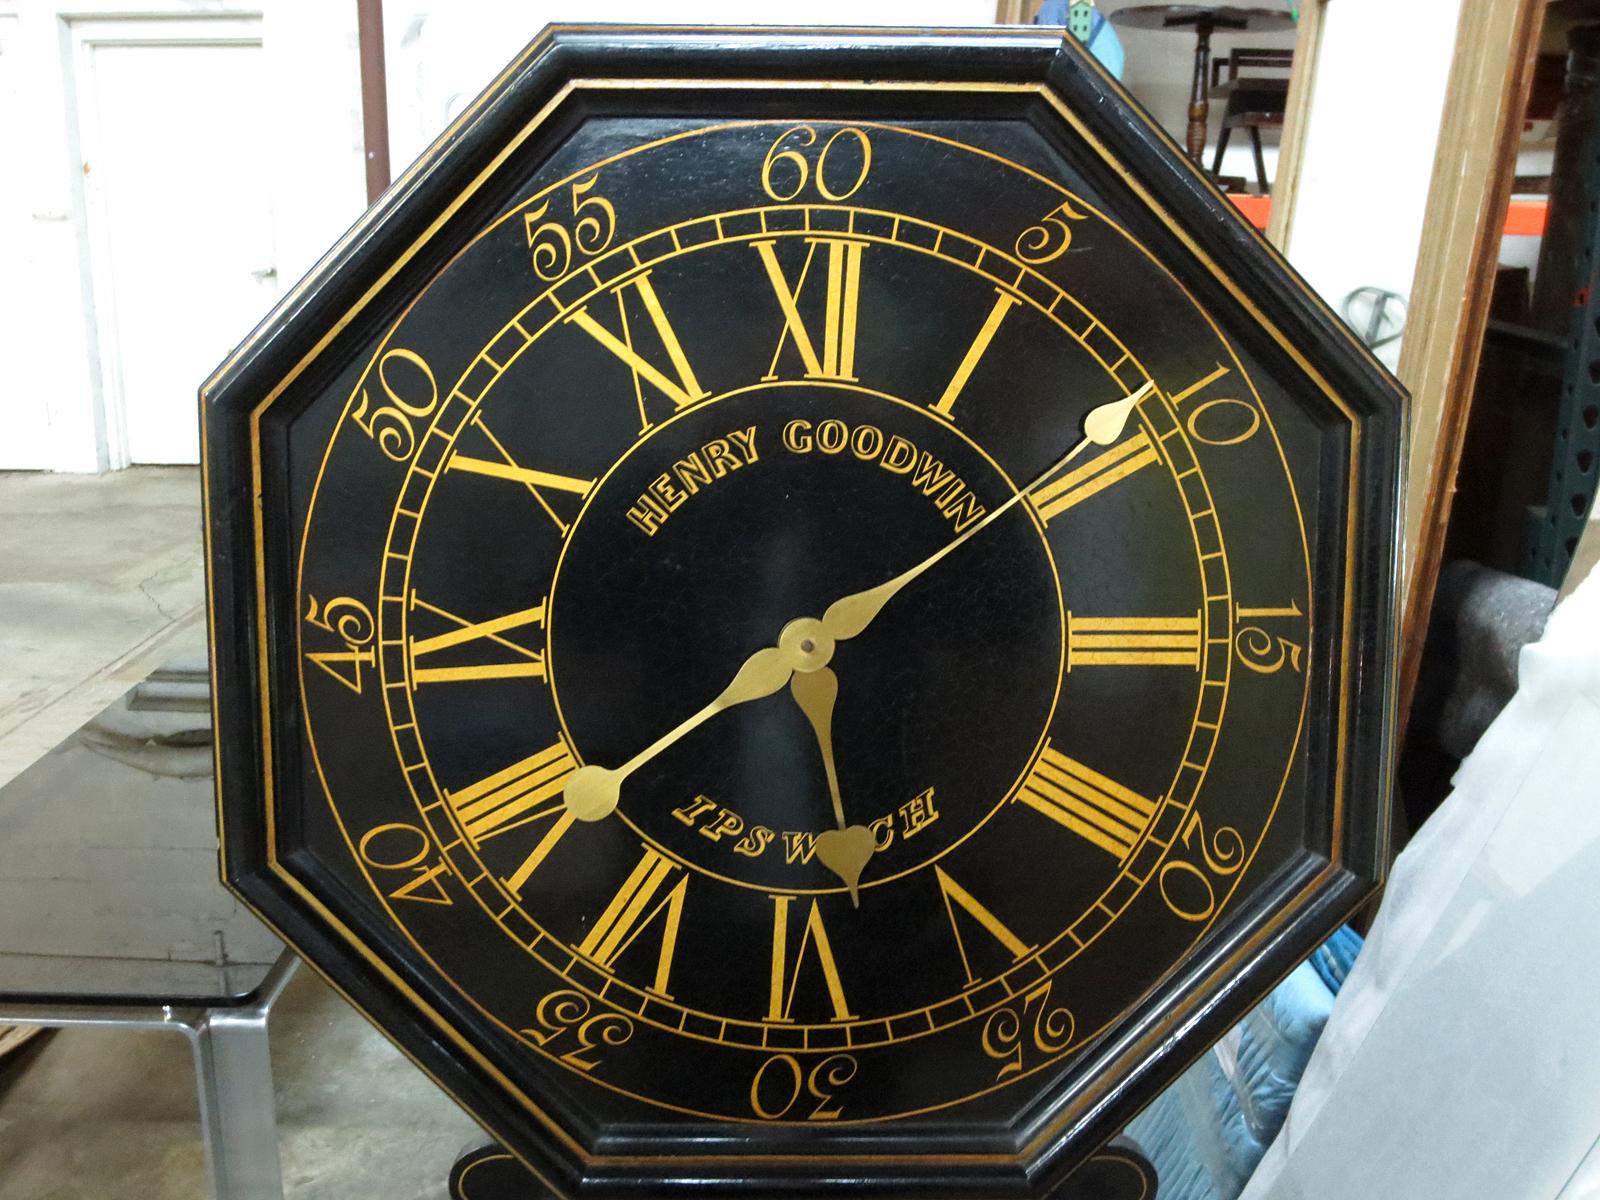 20th century parliament clock.